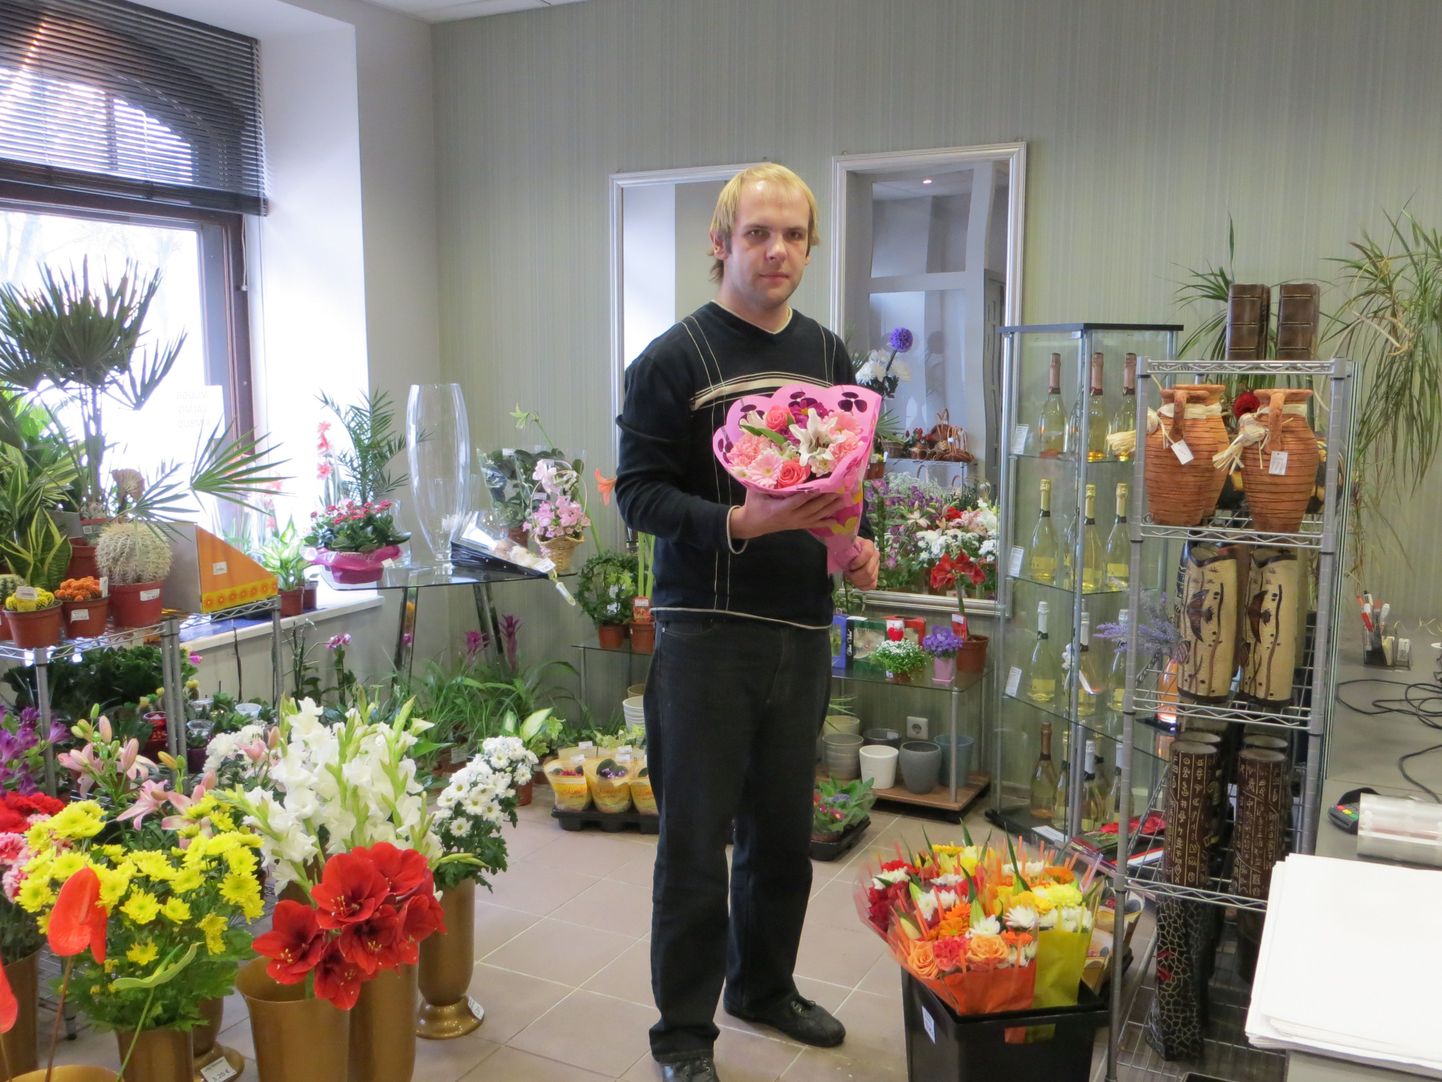 Lilleäri juhataja Mattis Pihu sõnul ostetakse kauplusest kõige enam lõikelilli, järgnevad potililled. Juhataja näitab kohapeal valmistatud euroopalikus stiilis lillekimpu, kus kasutatud nelja kuni viit lillesorti.